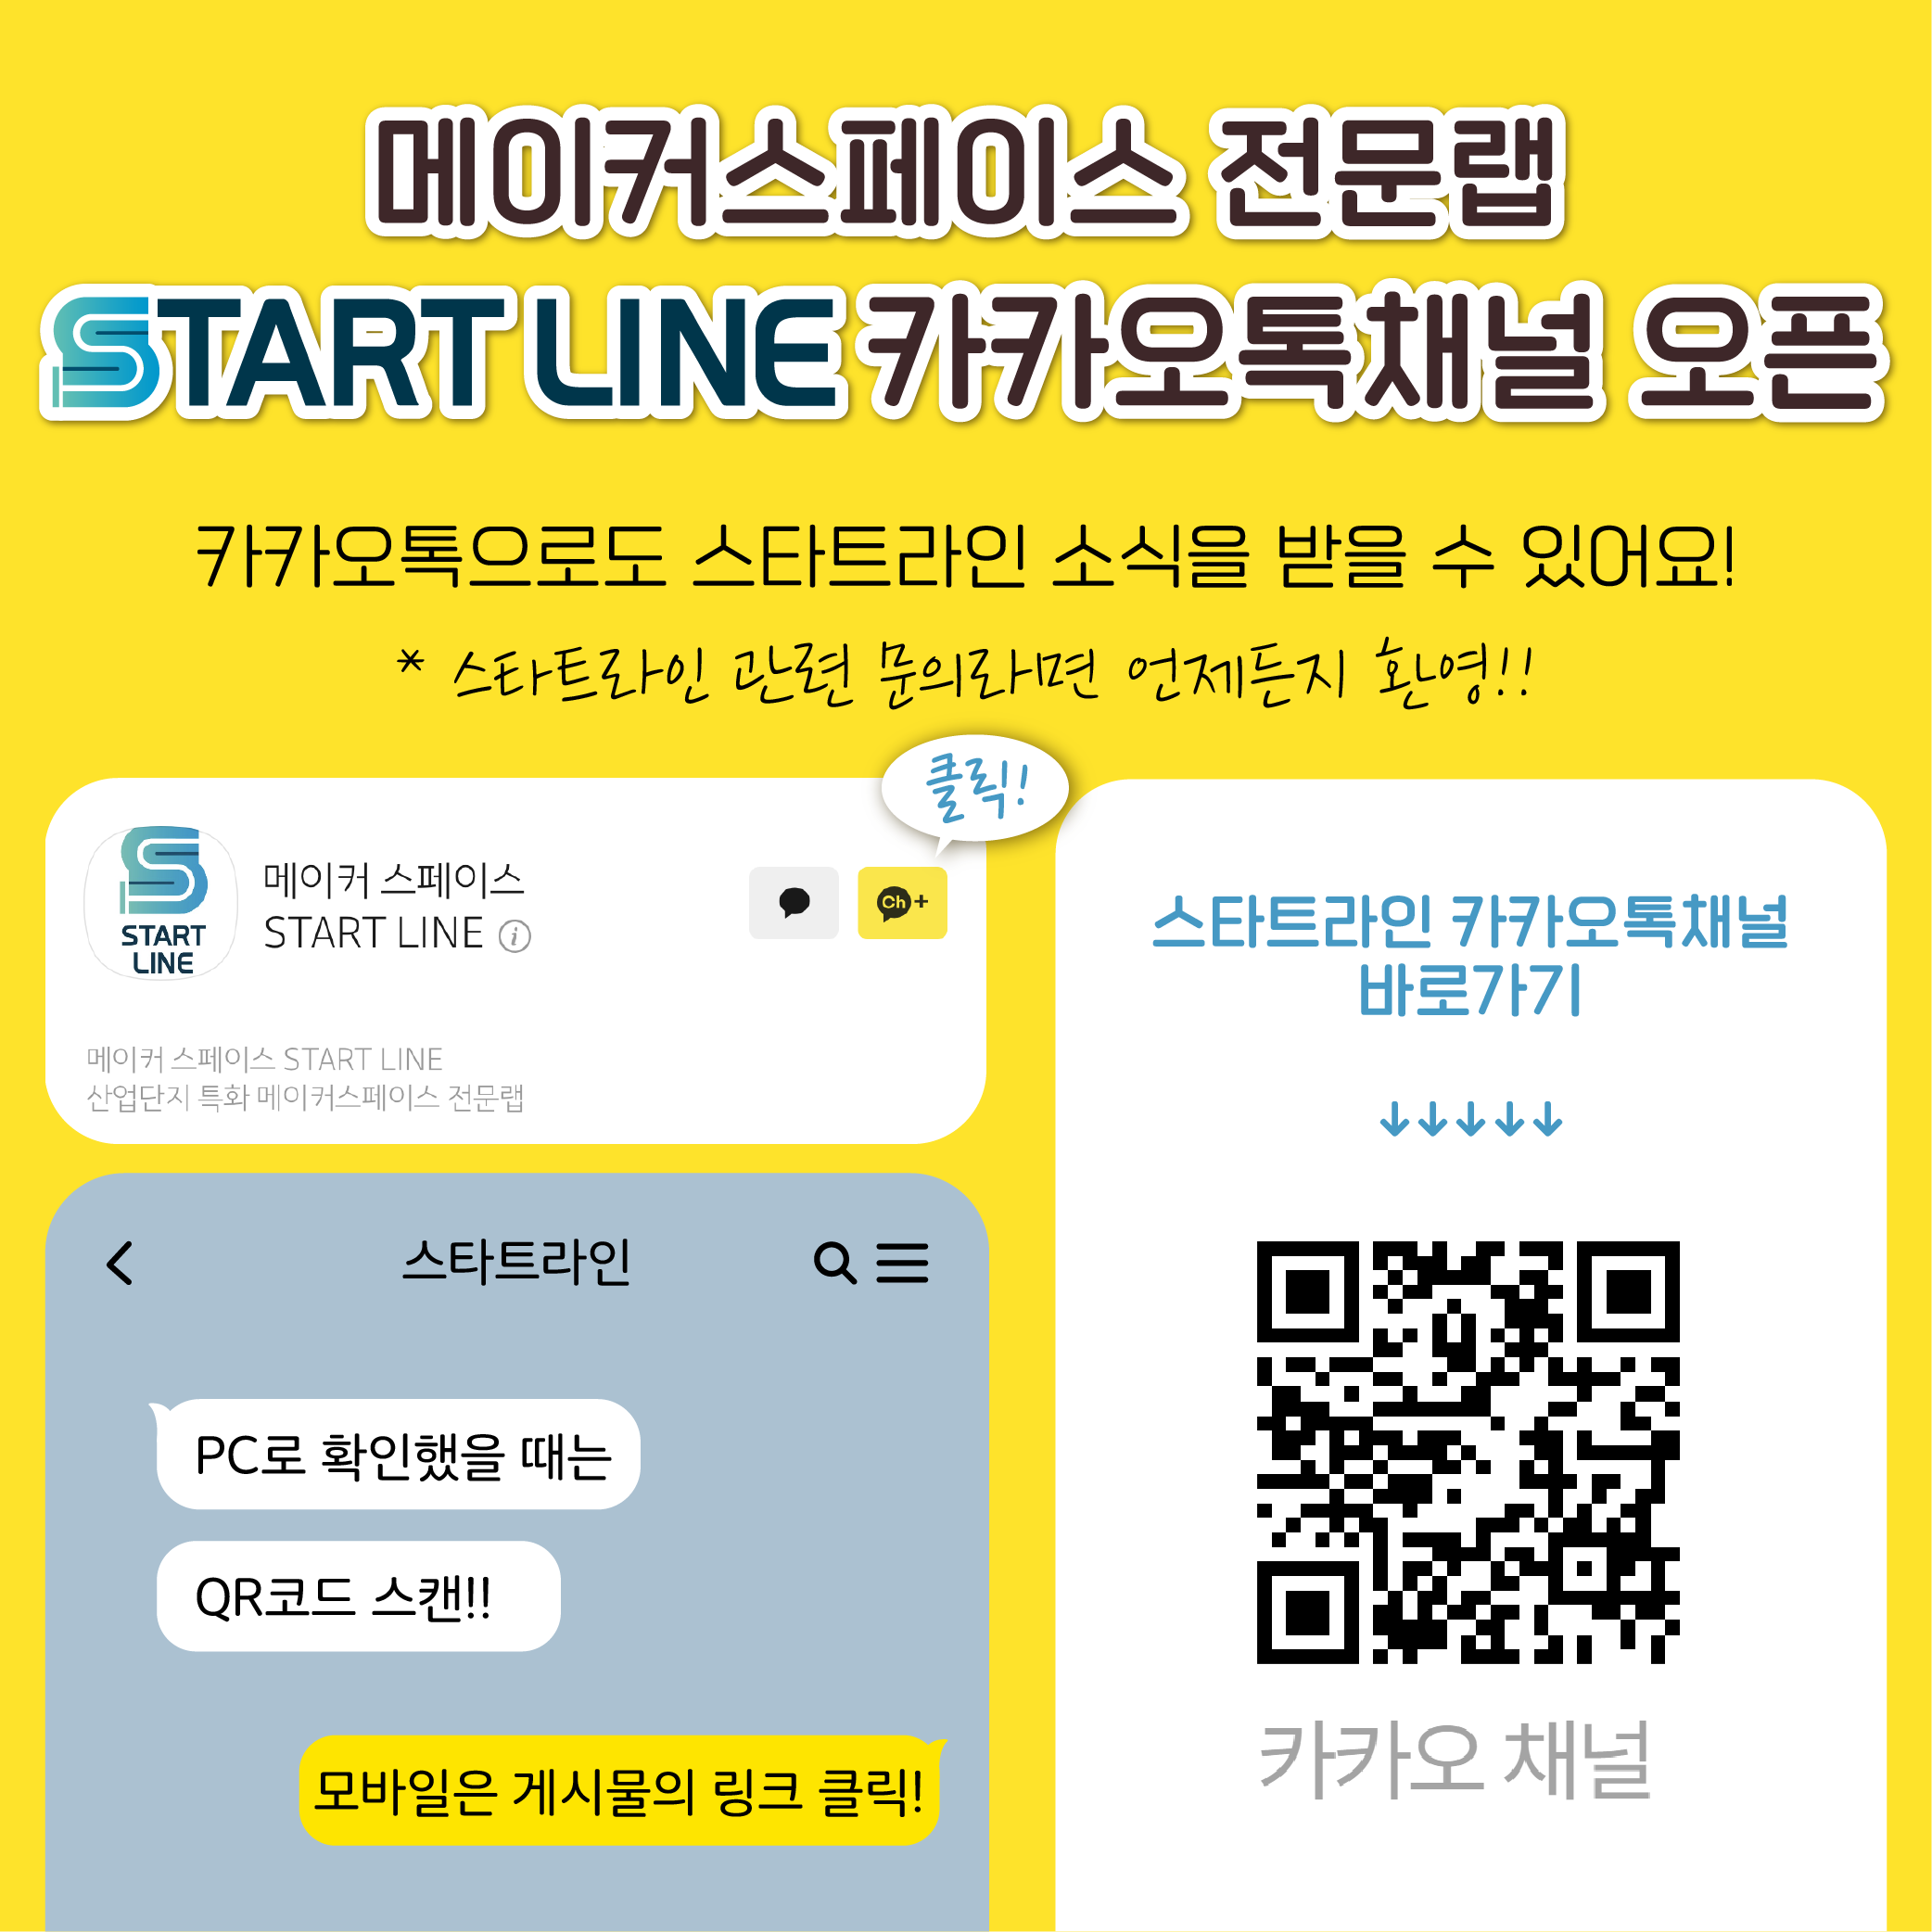 START LINE 카카오톡 채널 개설